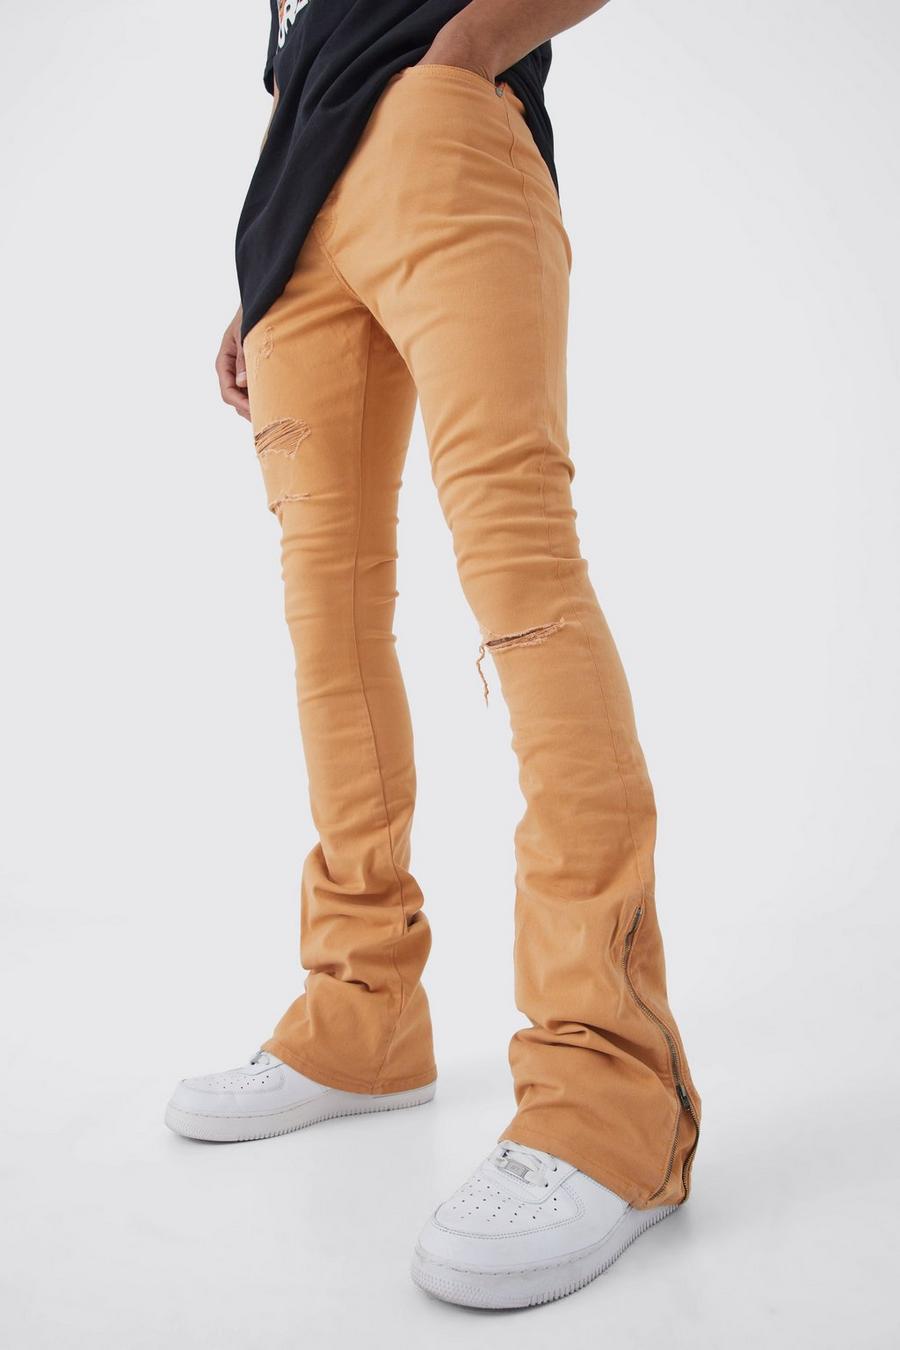 Pantaloni Tall con strappi & rattoppi in vita fissa, zip e inserti, Orange